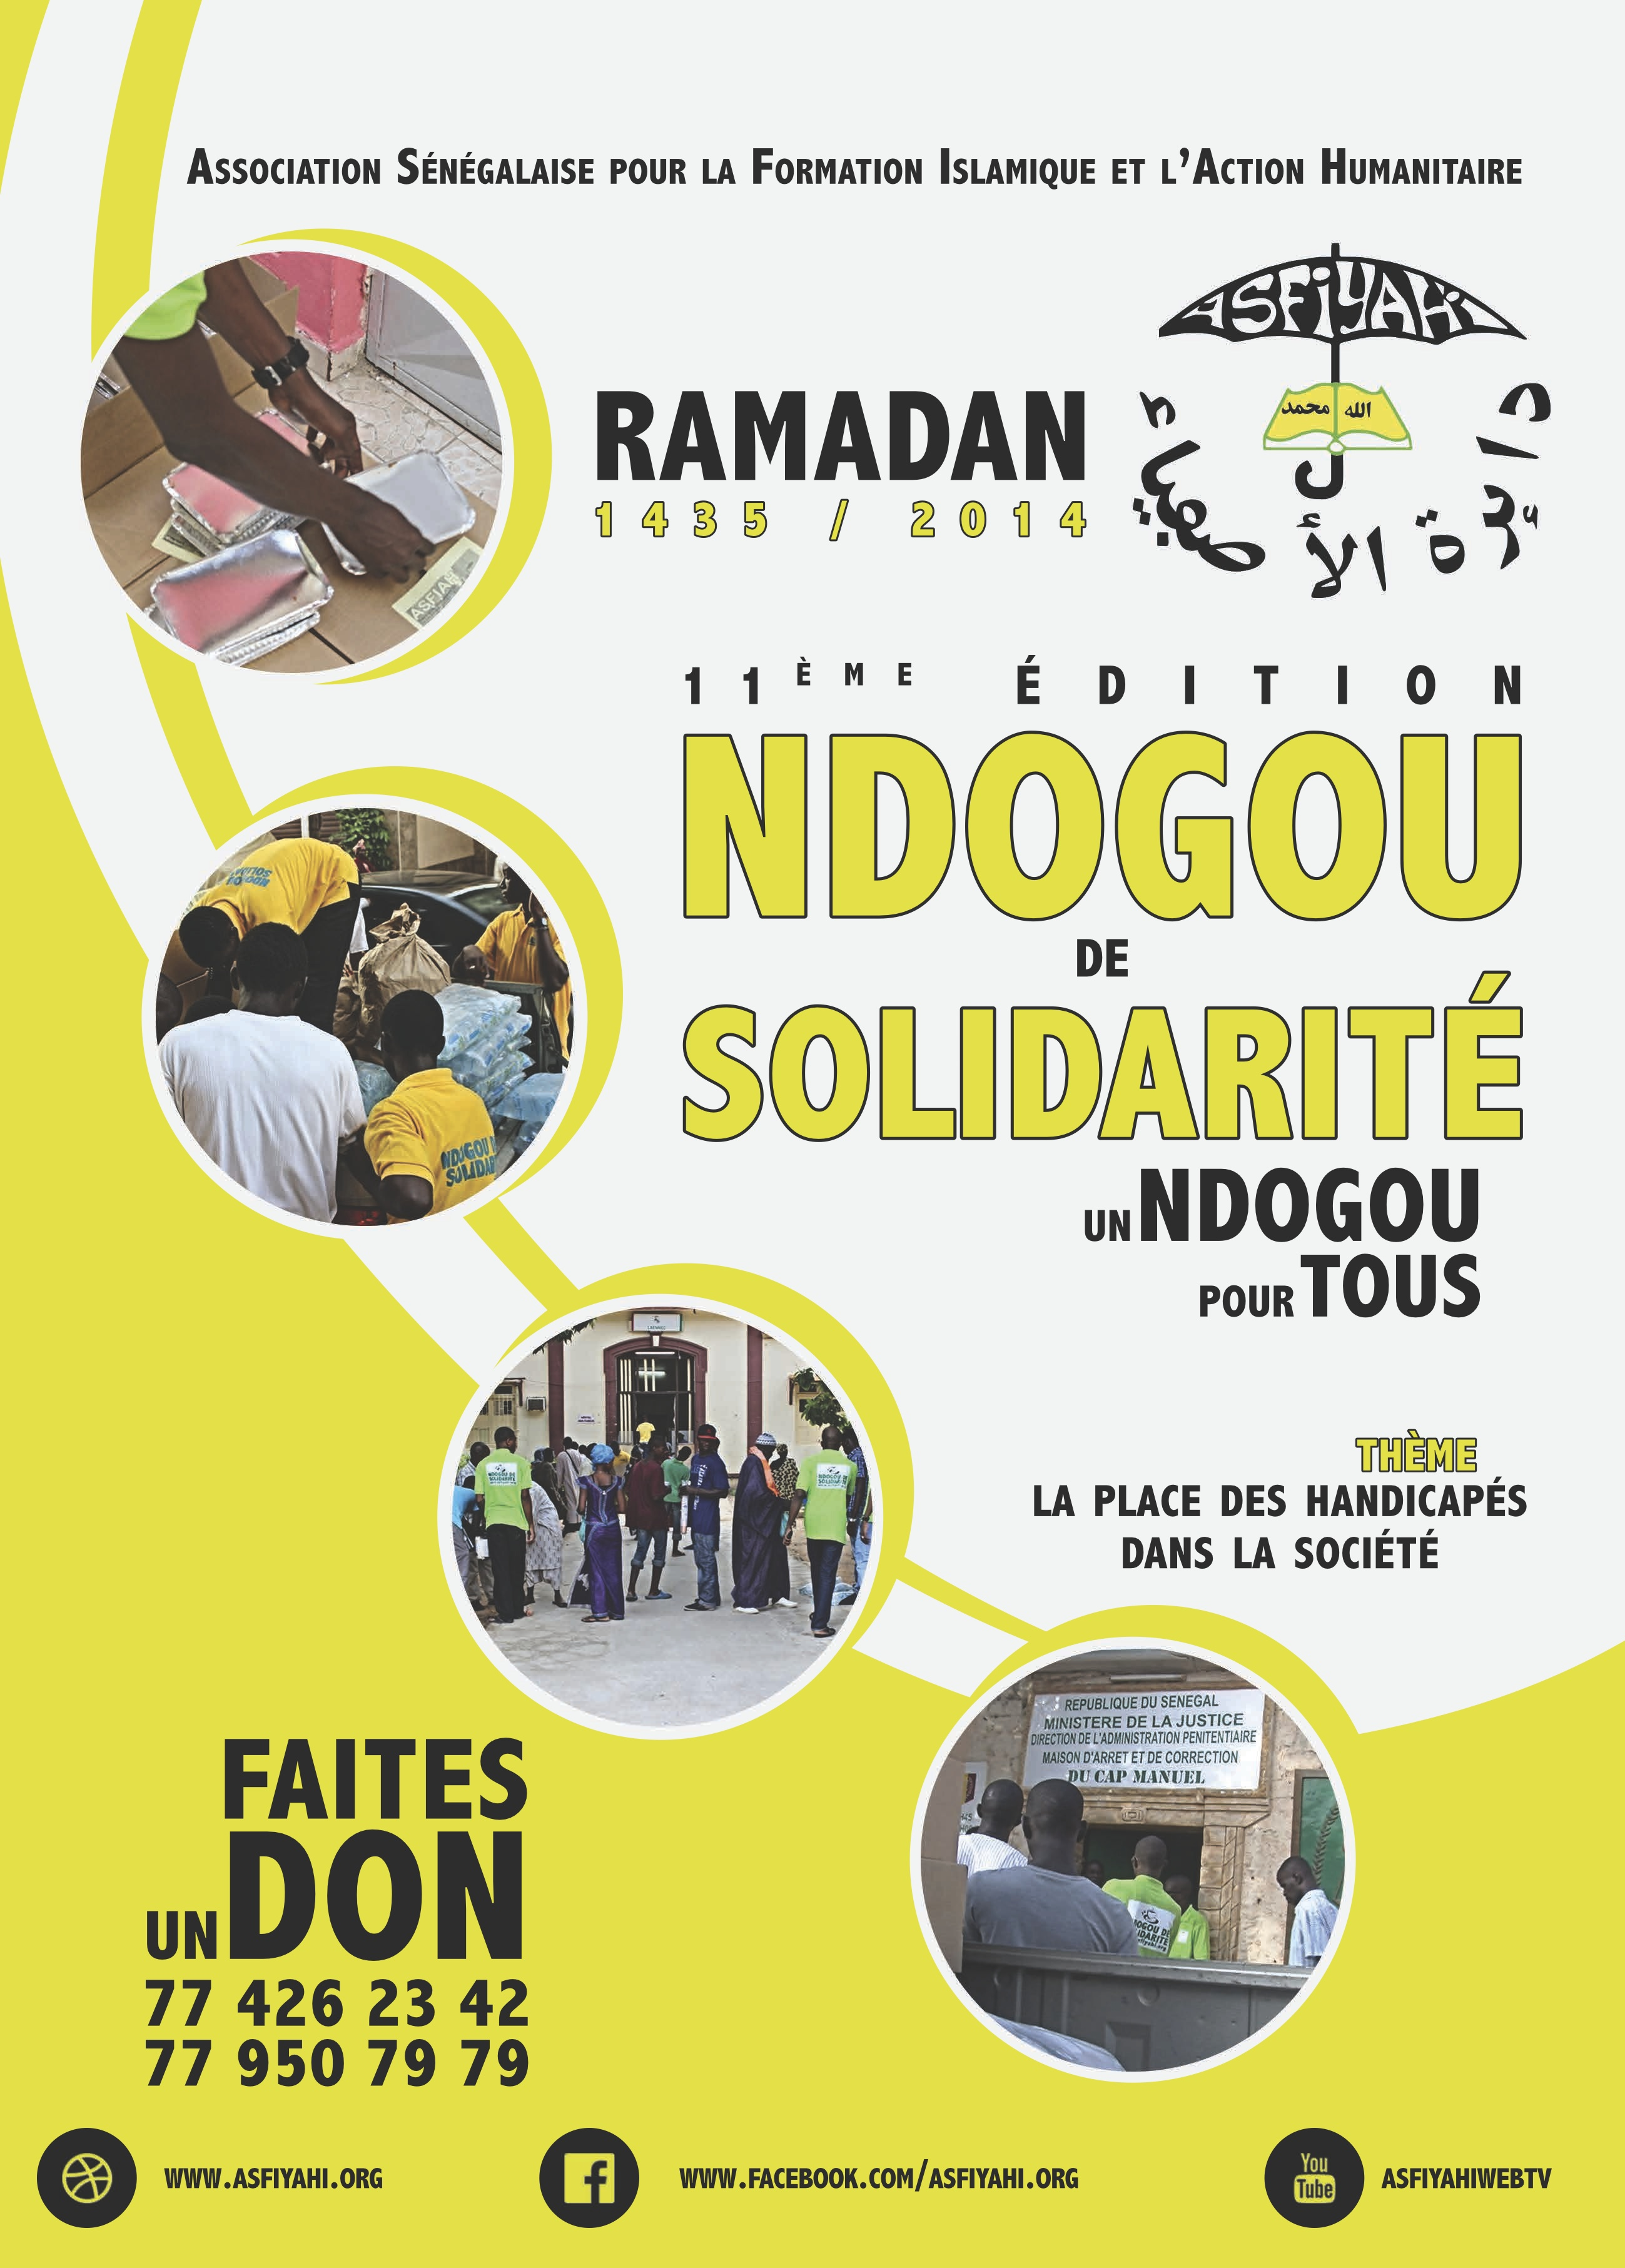 Ndogou Débat et de Solidarité sur le théme : La Place des Handicapés dans la Société : Samedi 26 Juillet 2014 au Siège du Dahira Asfiyahi